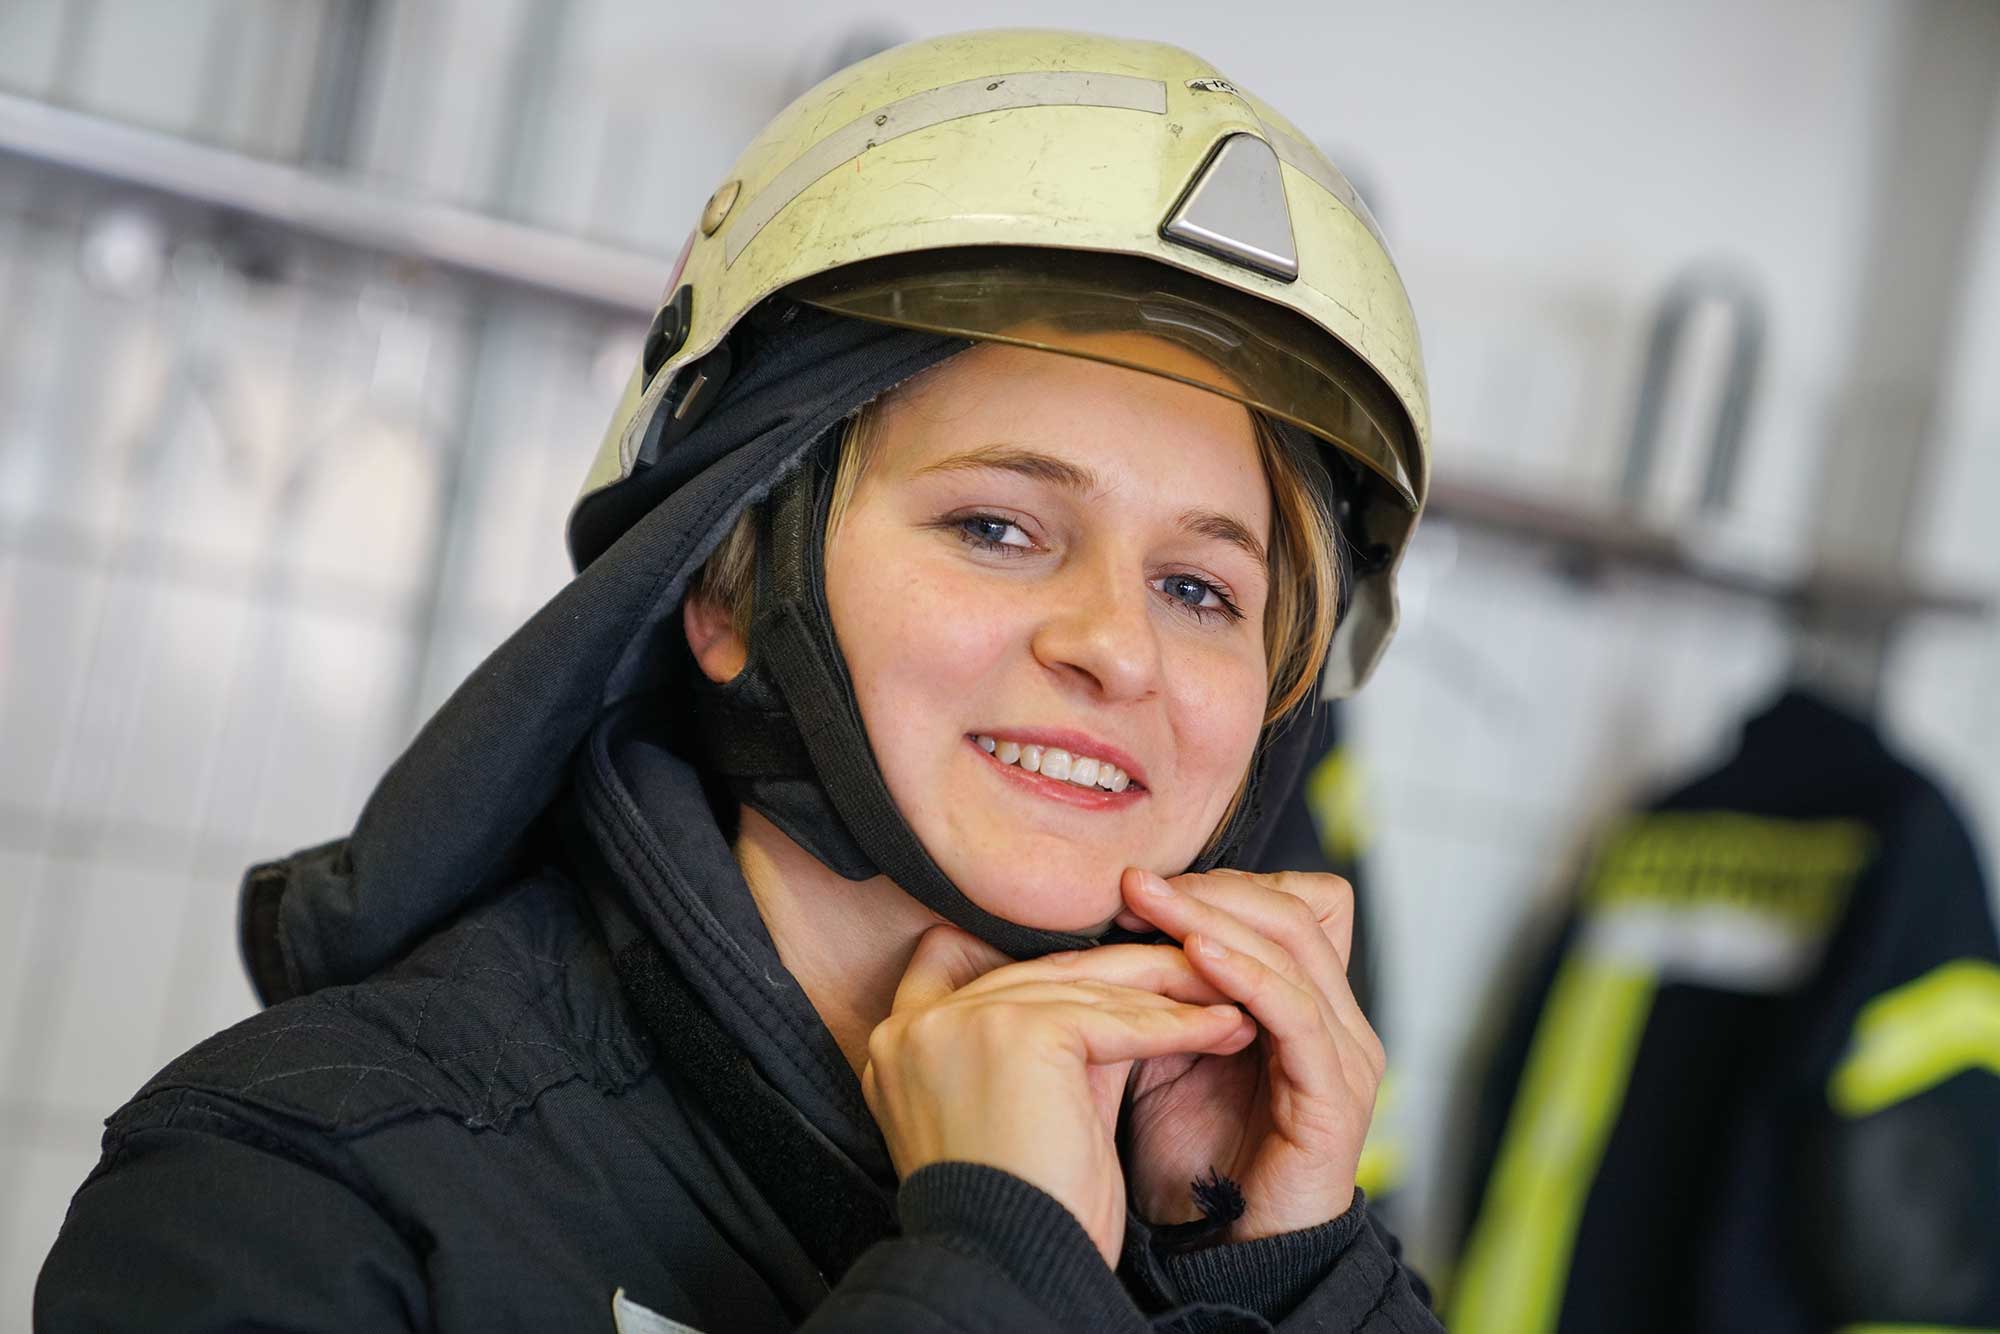 Die Zukunft der Feuerwehr: Eine junge, engagierte Feuerwehrfrau bereitet sich auf ihren Einsatz vor. Möchten Sie sich ebenfalls für unsere Gemeinschaft engagieren? Werden Sie Teil unseres Teams.